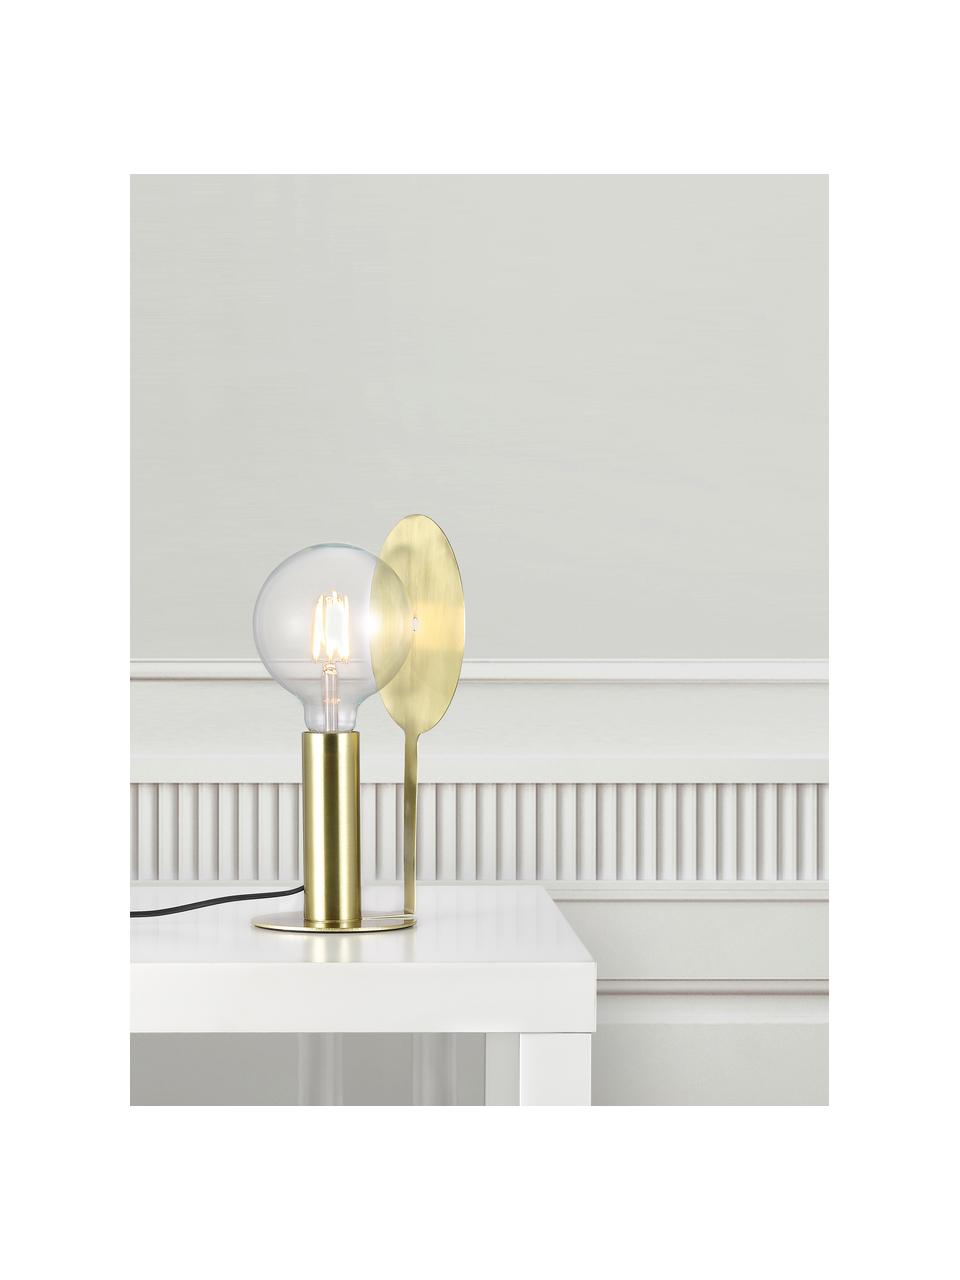 Kleine Tischlampe Dean mit Messing-Reflektor, Lampenfuß: Messing, Lampenschirm: Messing, Messing, 17 x 32 cm